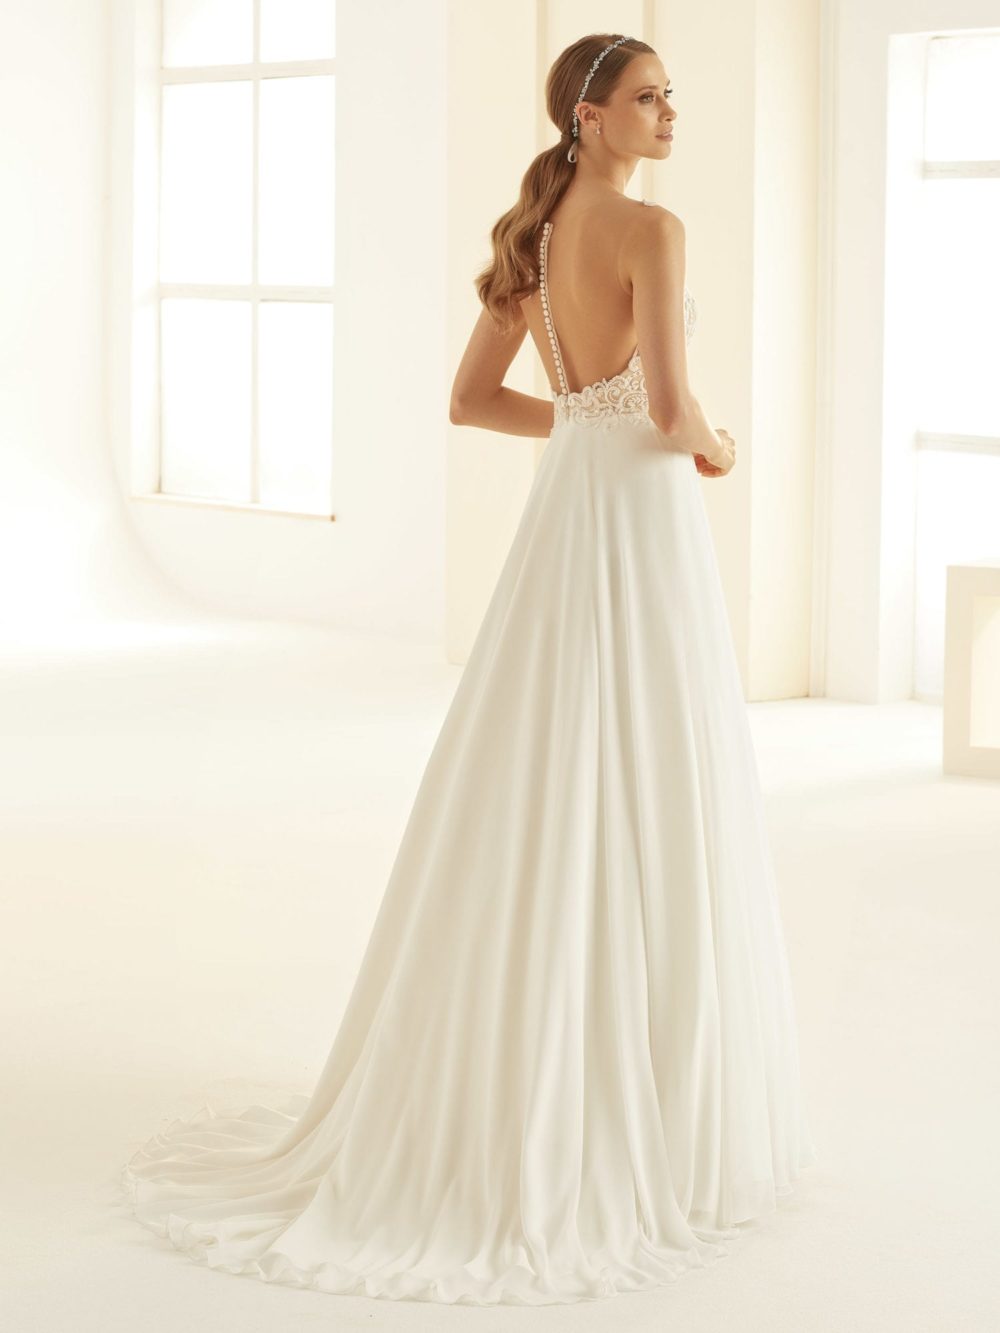 Virkelig smuk A-line brudekjole fra Bianco Evento med nude-farvet overdel og ivory blonder og chifonskørt. Modellen hedder Pandora og kan bestilles i andre størrelser og fås også i ren ivory udgave.